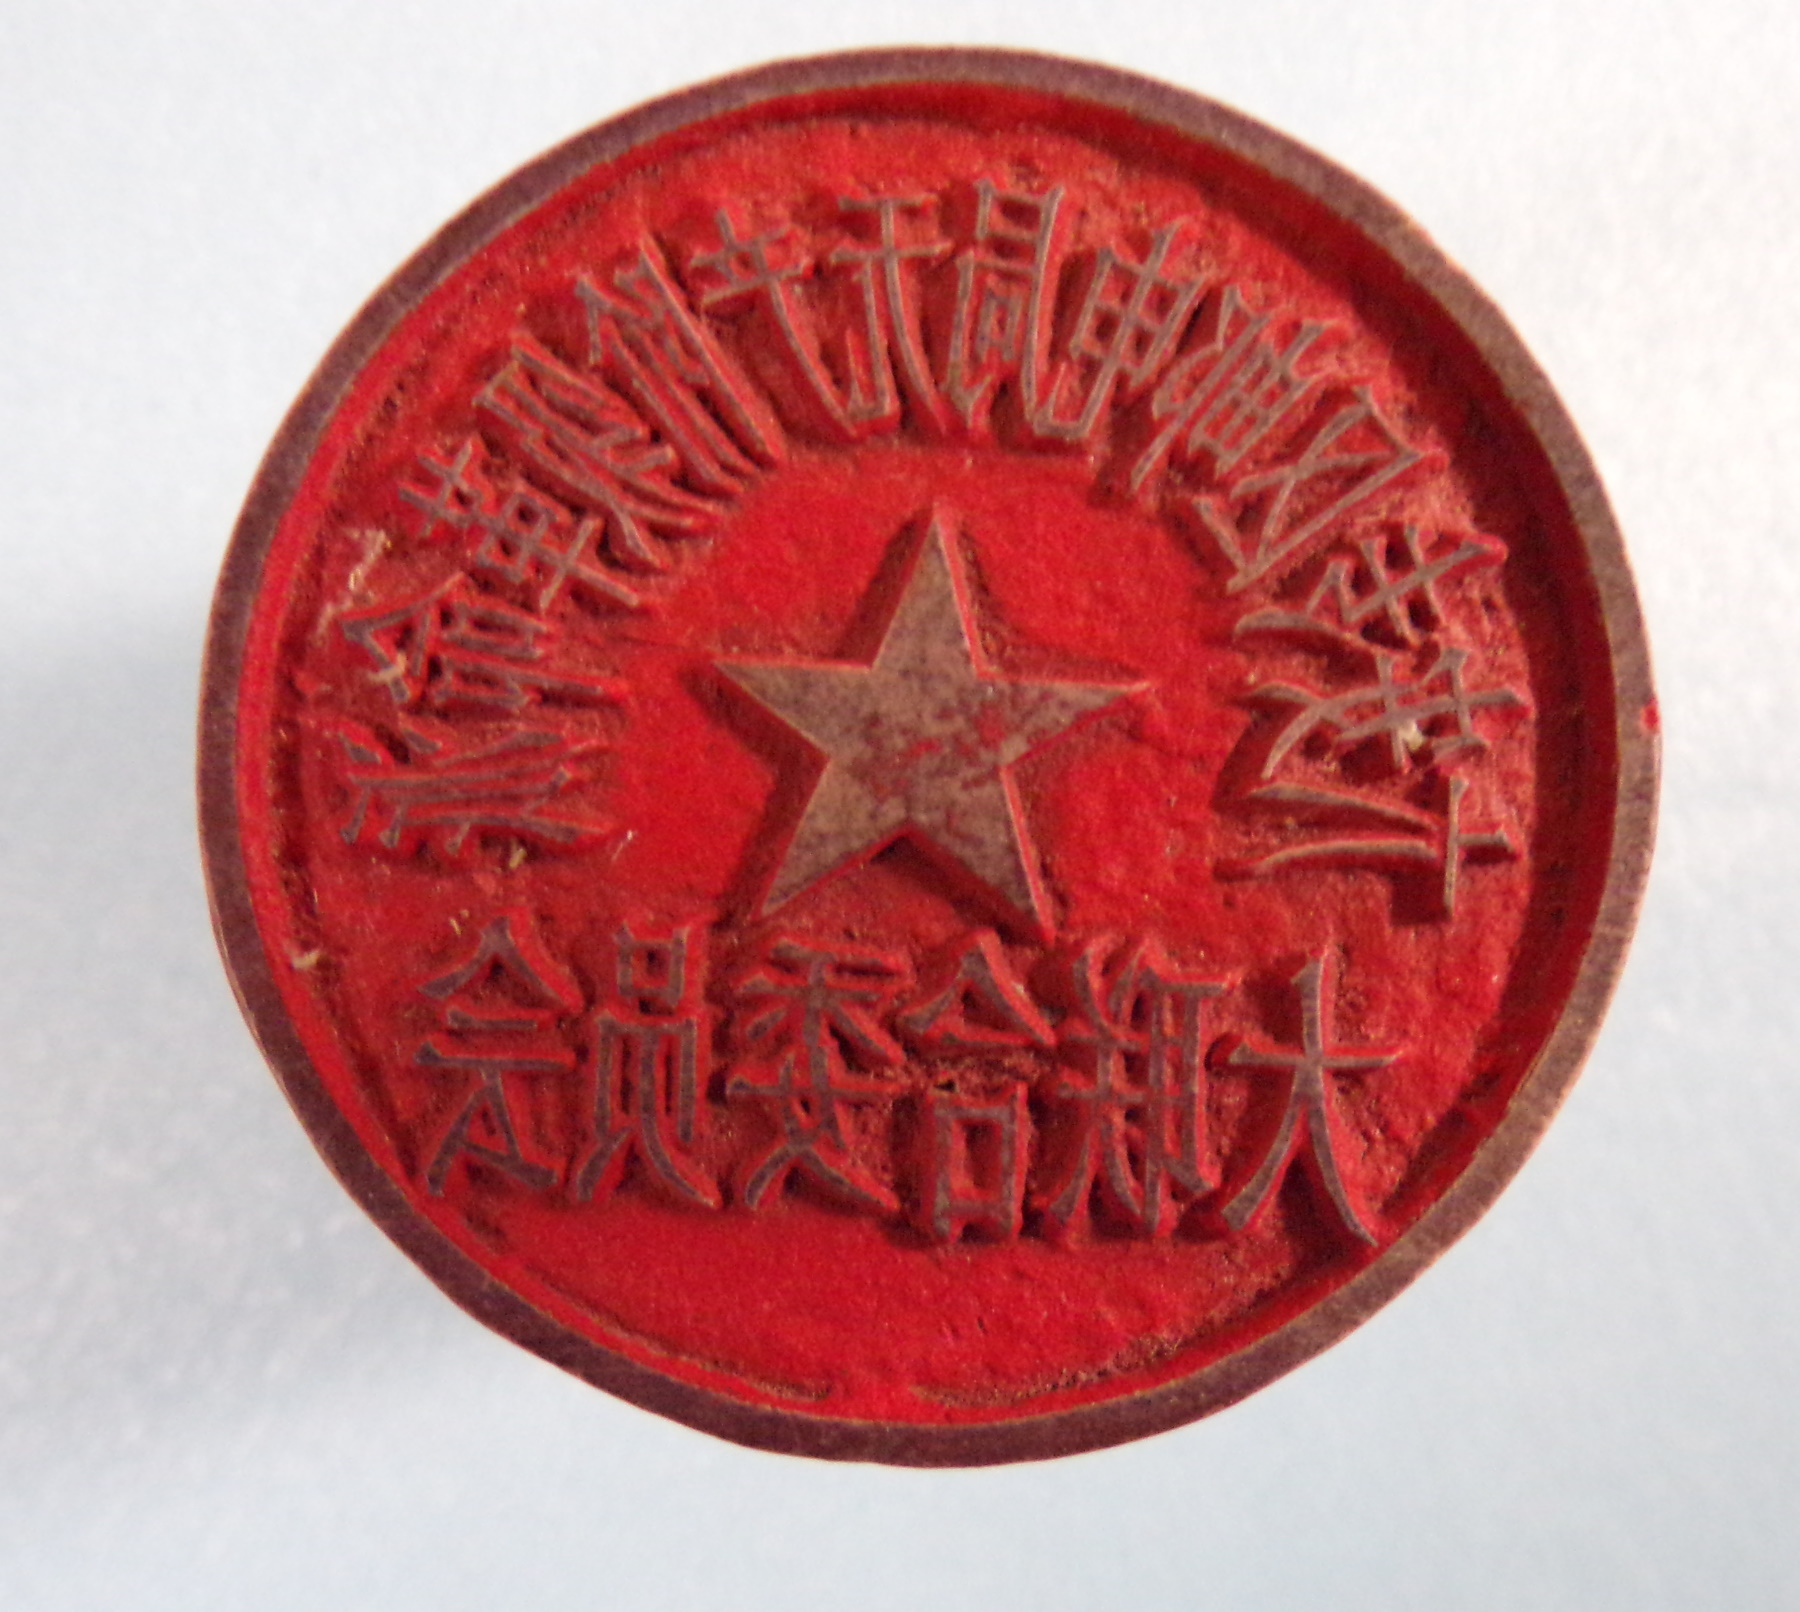 An Official Stamp印章